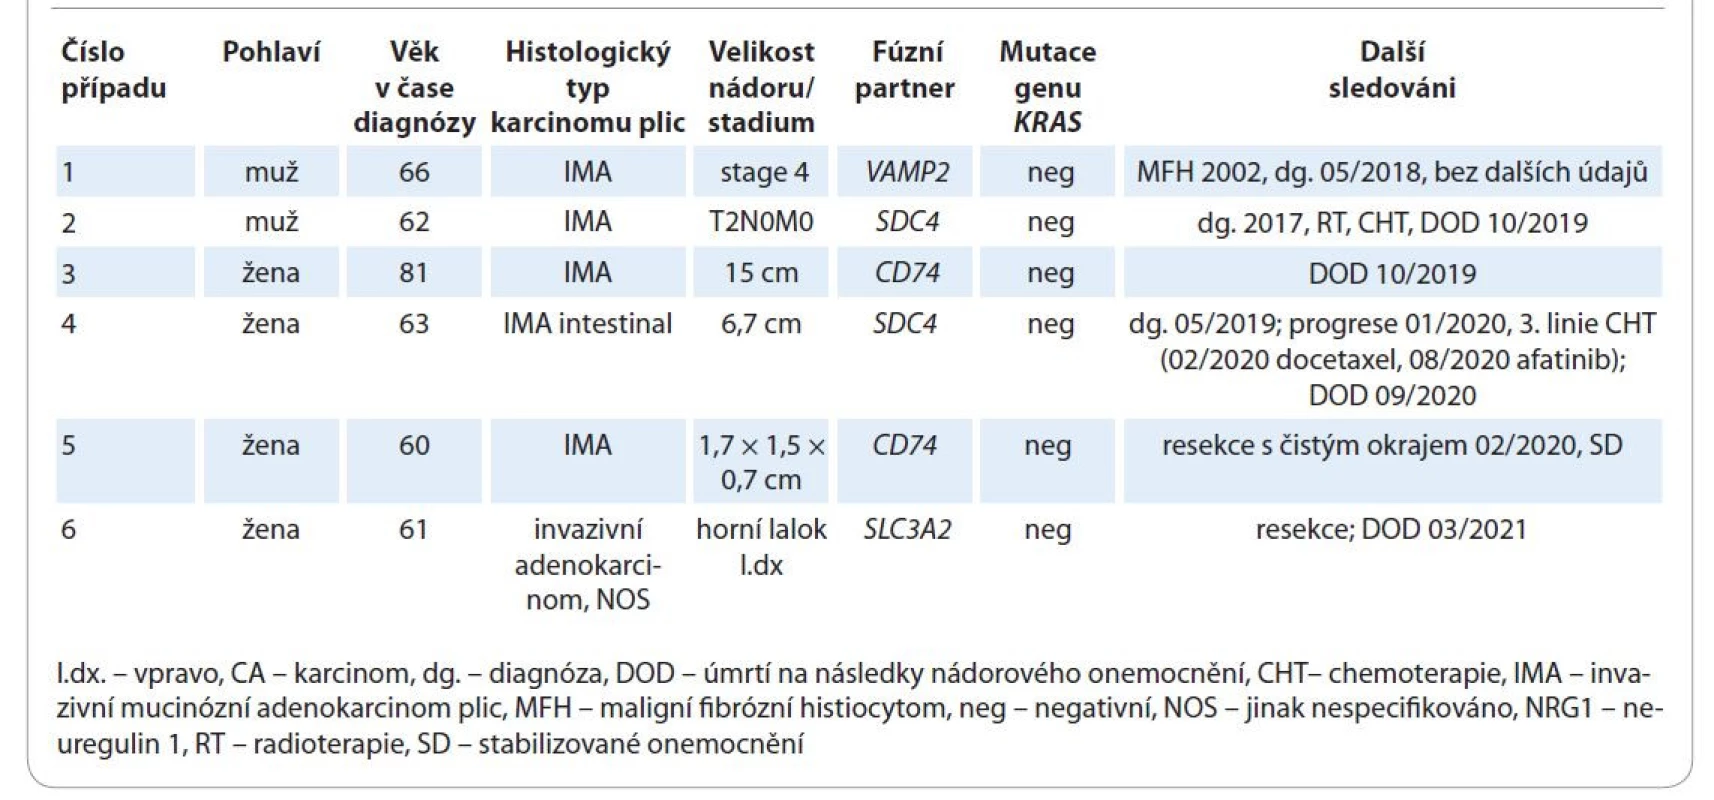 Základní charakteristika českých pacientů s NRG1 rearanžovaným adenokarcinomem plic.